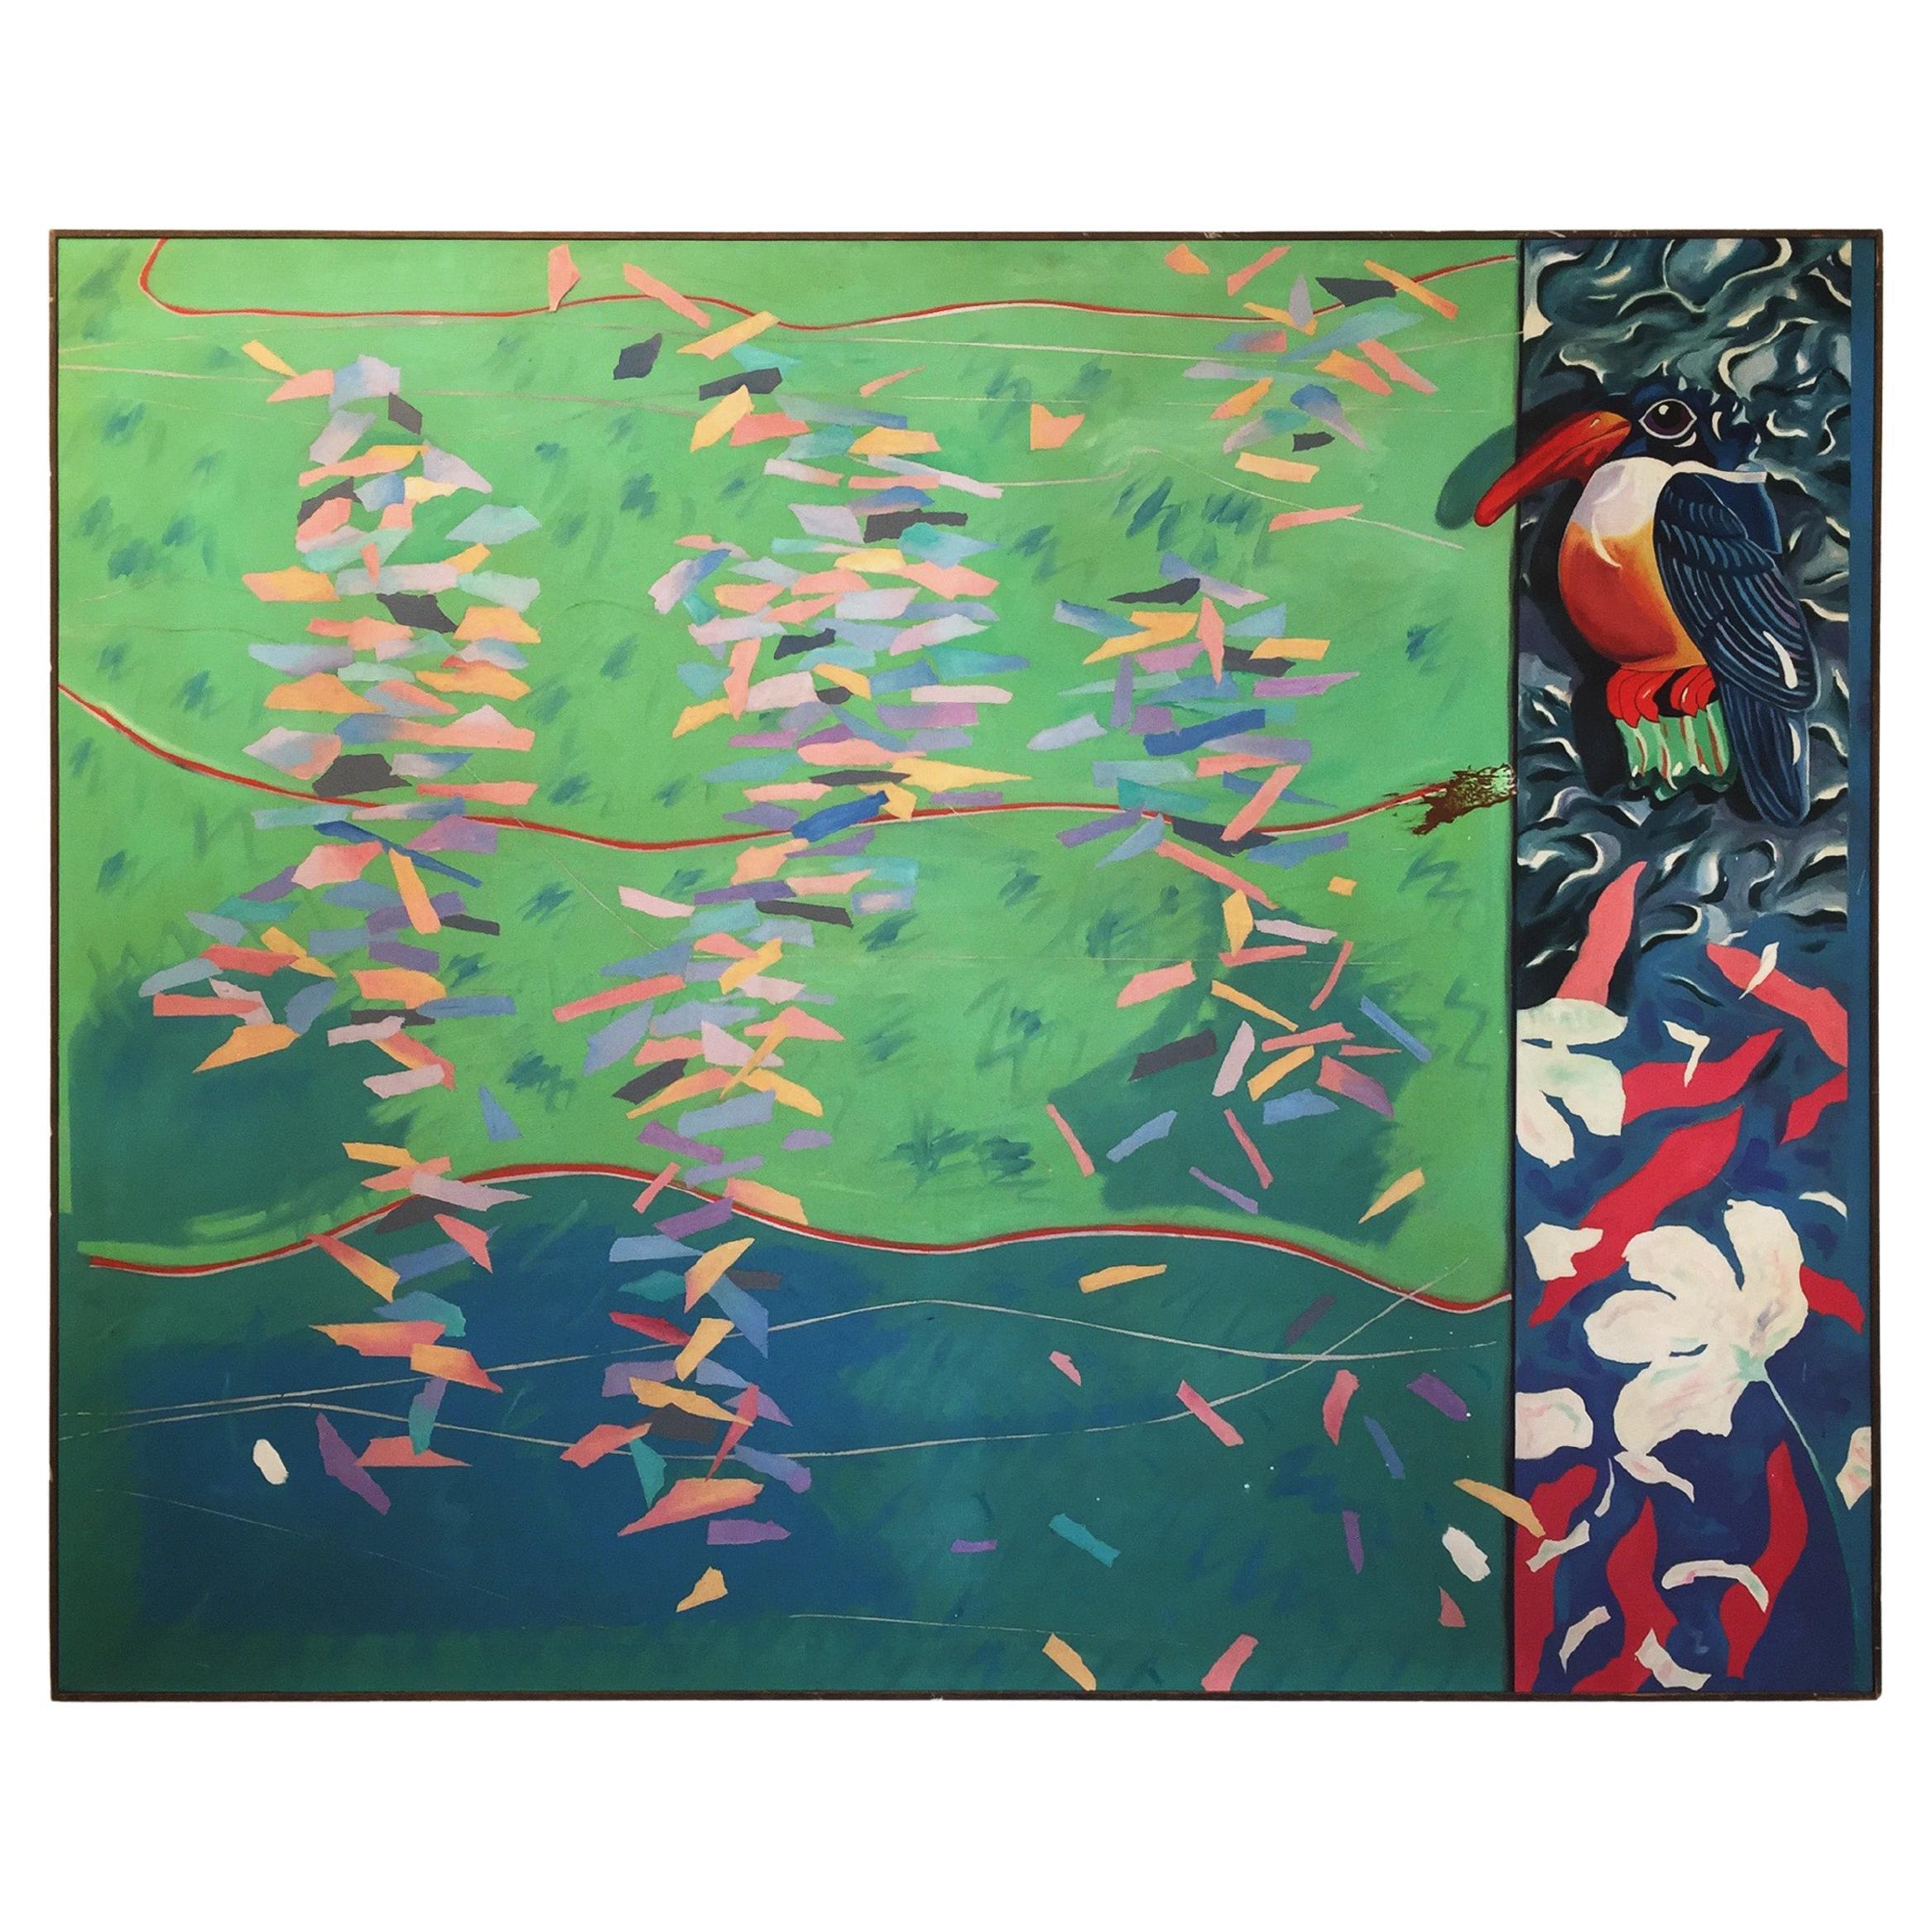 Richard Frank 'Kingfisher's Kotillion' Painting Oil On Canvas 1980s Art Painting